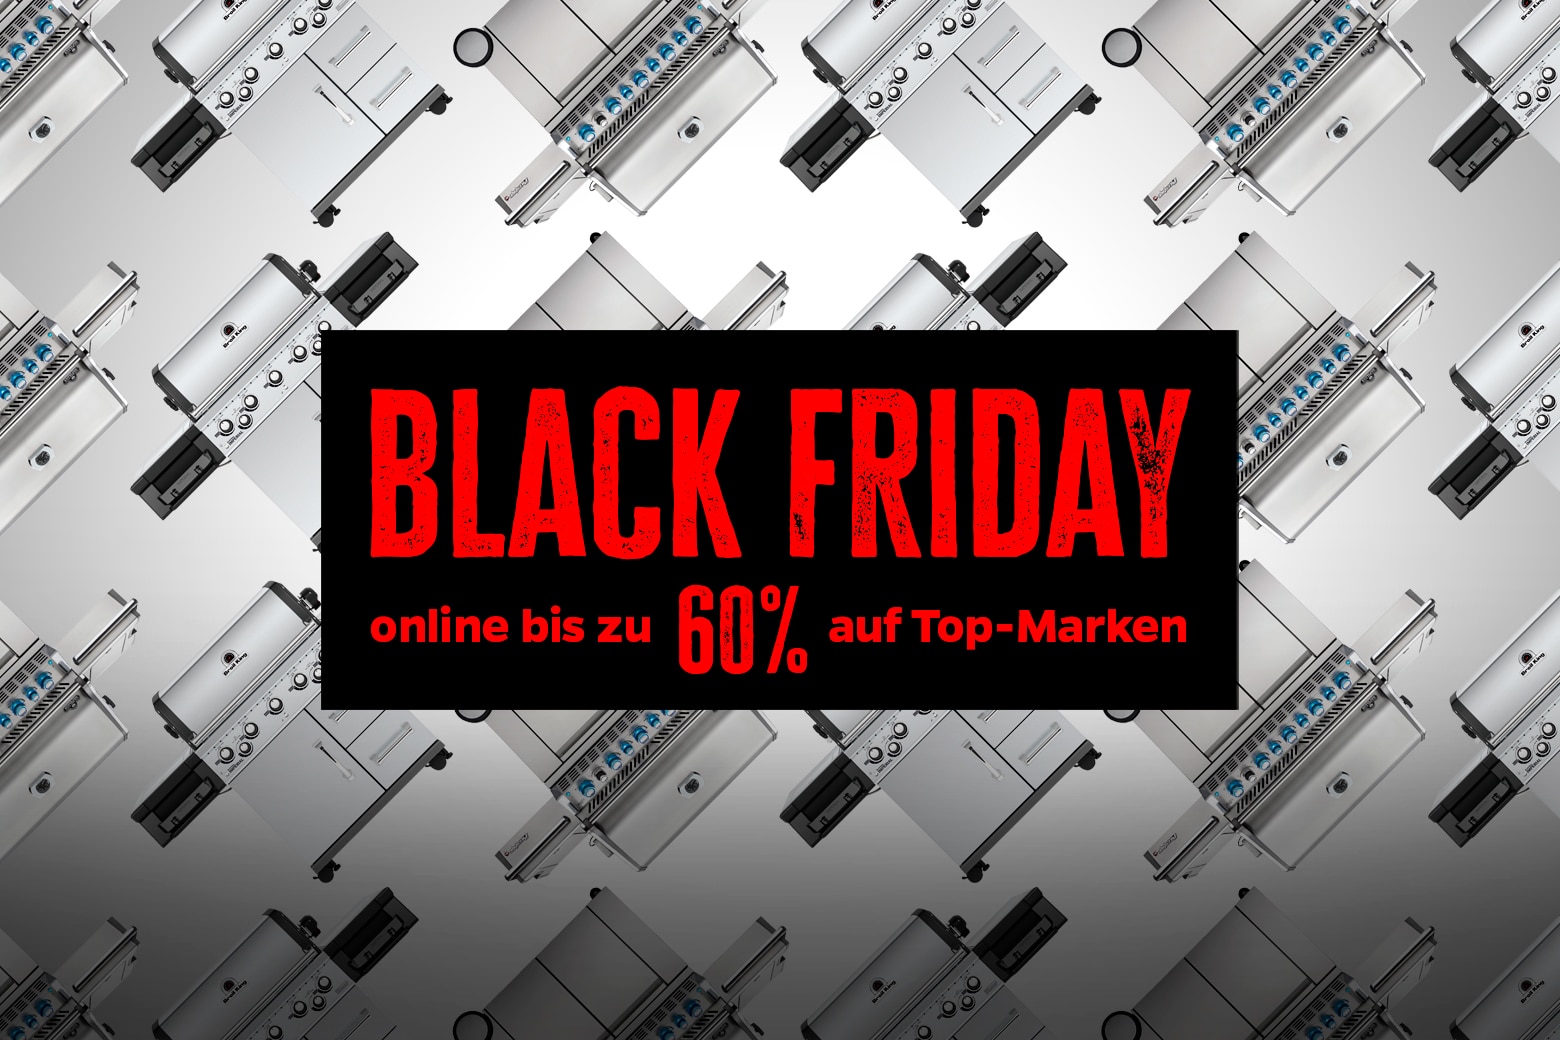 Grillfürst Black Friday Sale: Bis zu 60% auf Top-Marken